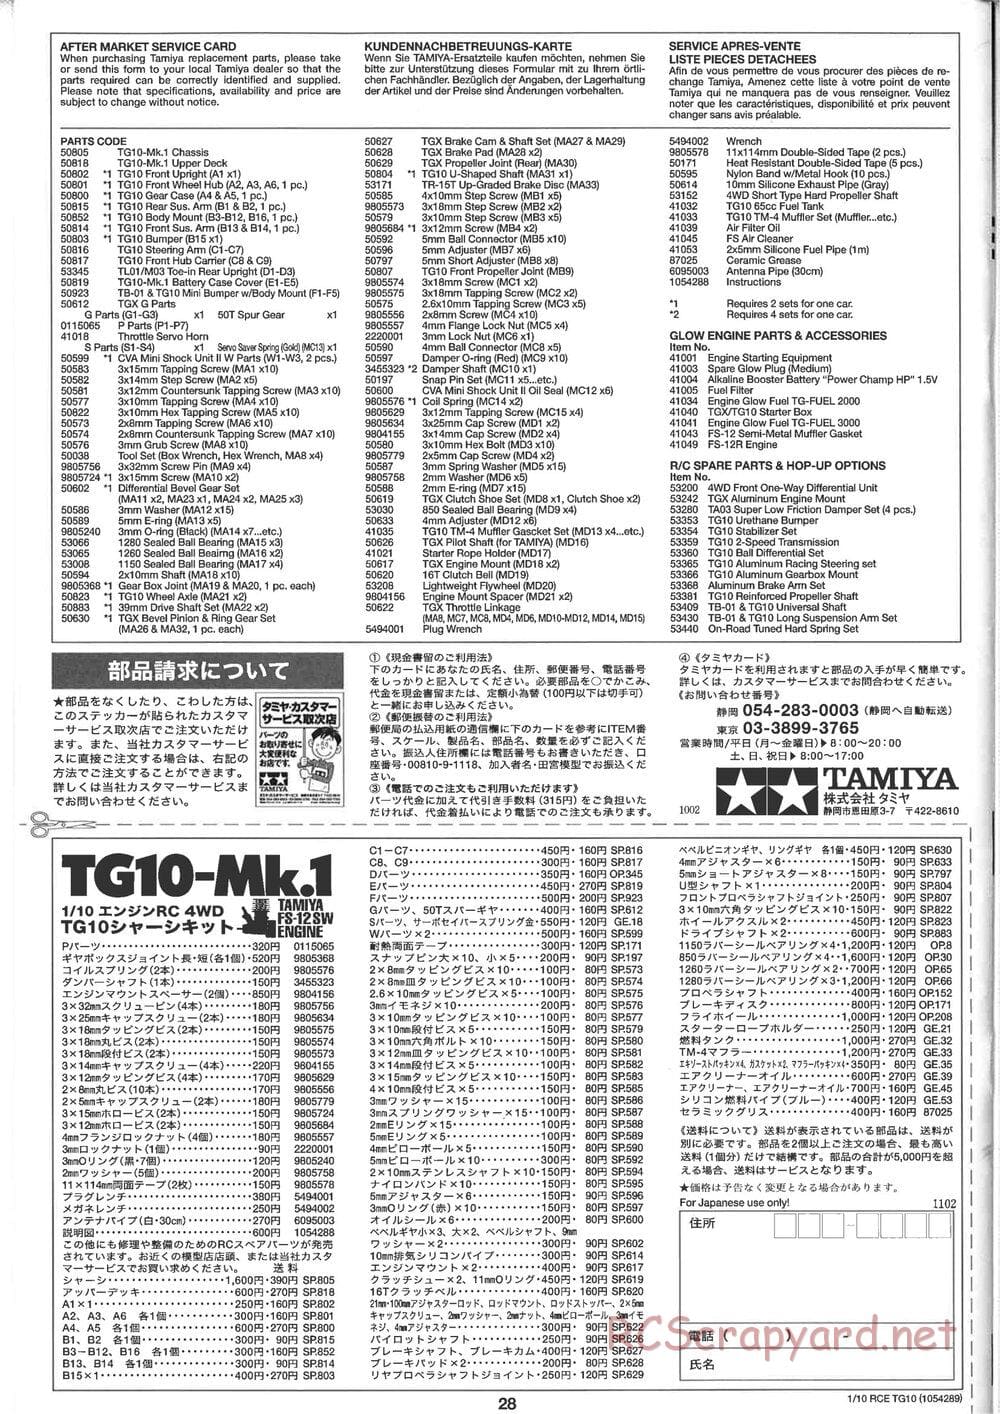 Tamiya - TG10 Mk.1 Chassis - Manual - Page 28